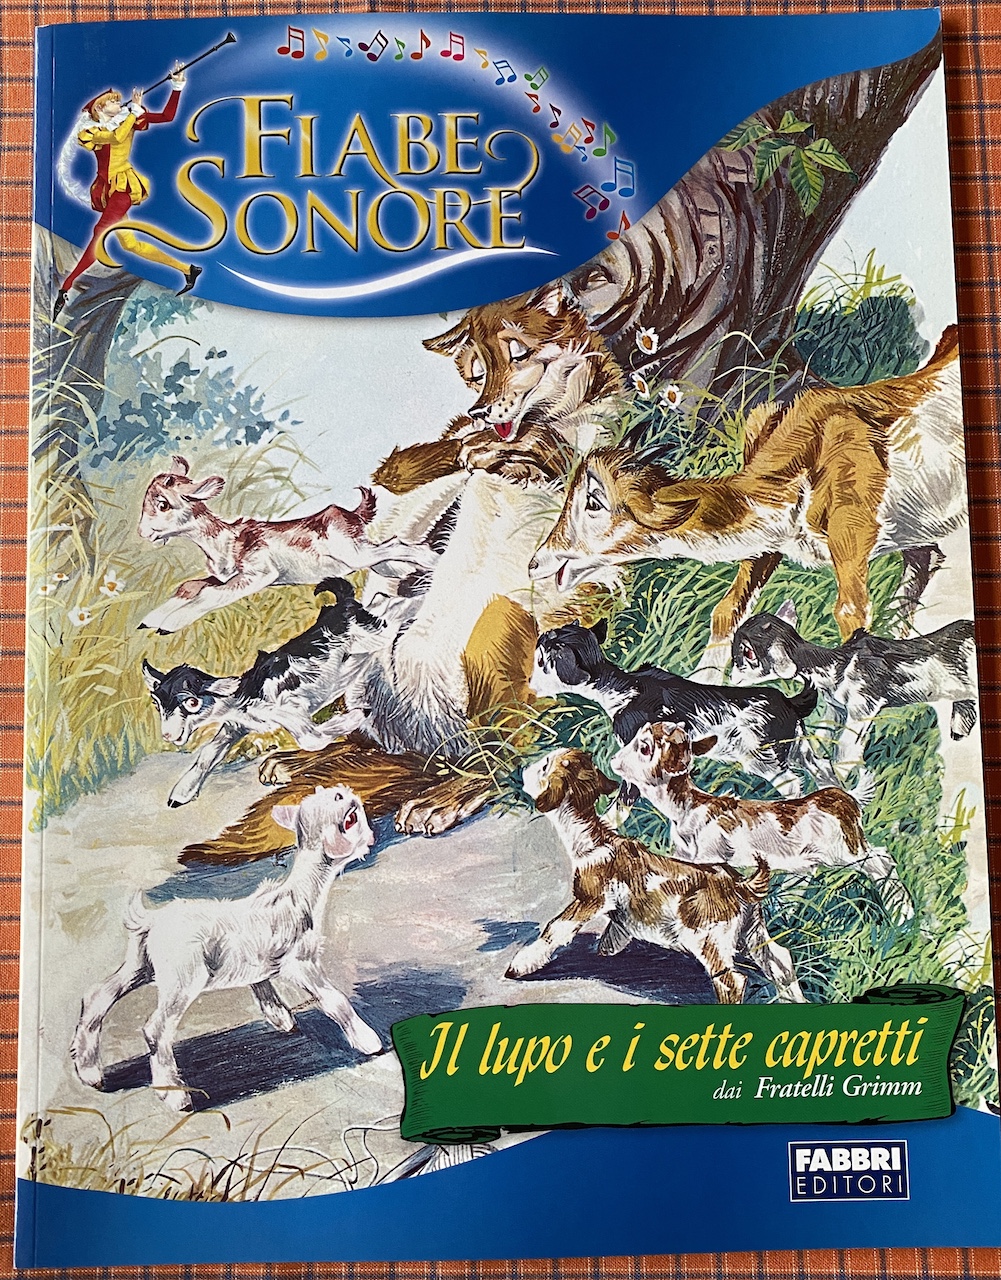 FIABE SONORE - Il lupo e i sette capretti - dai Fratelli Grimm - libro e CD  - Insegna